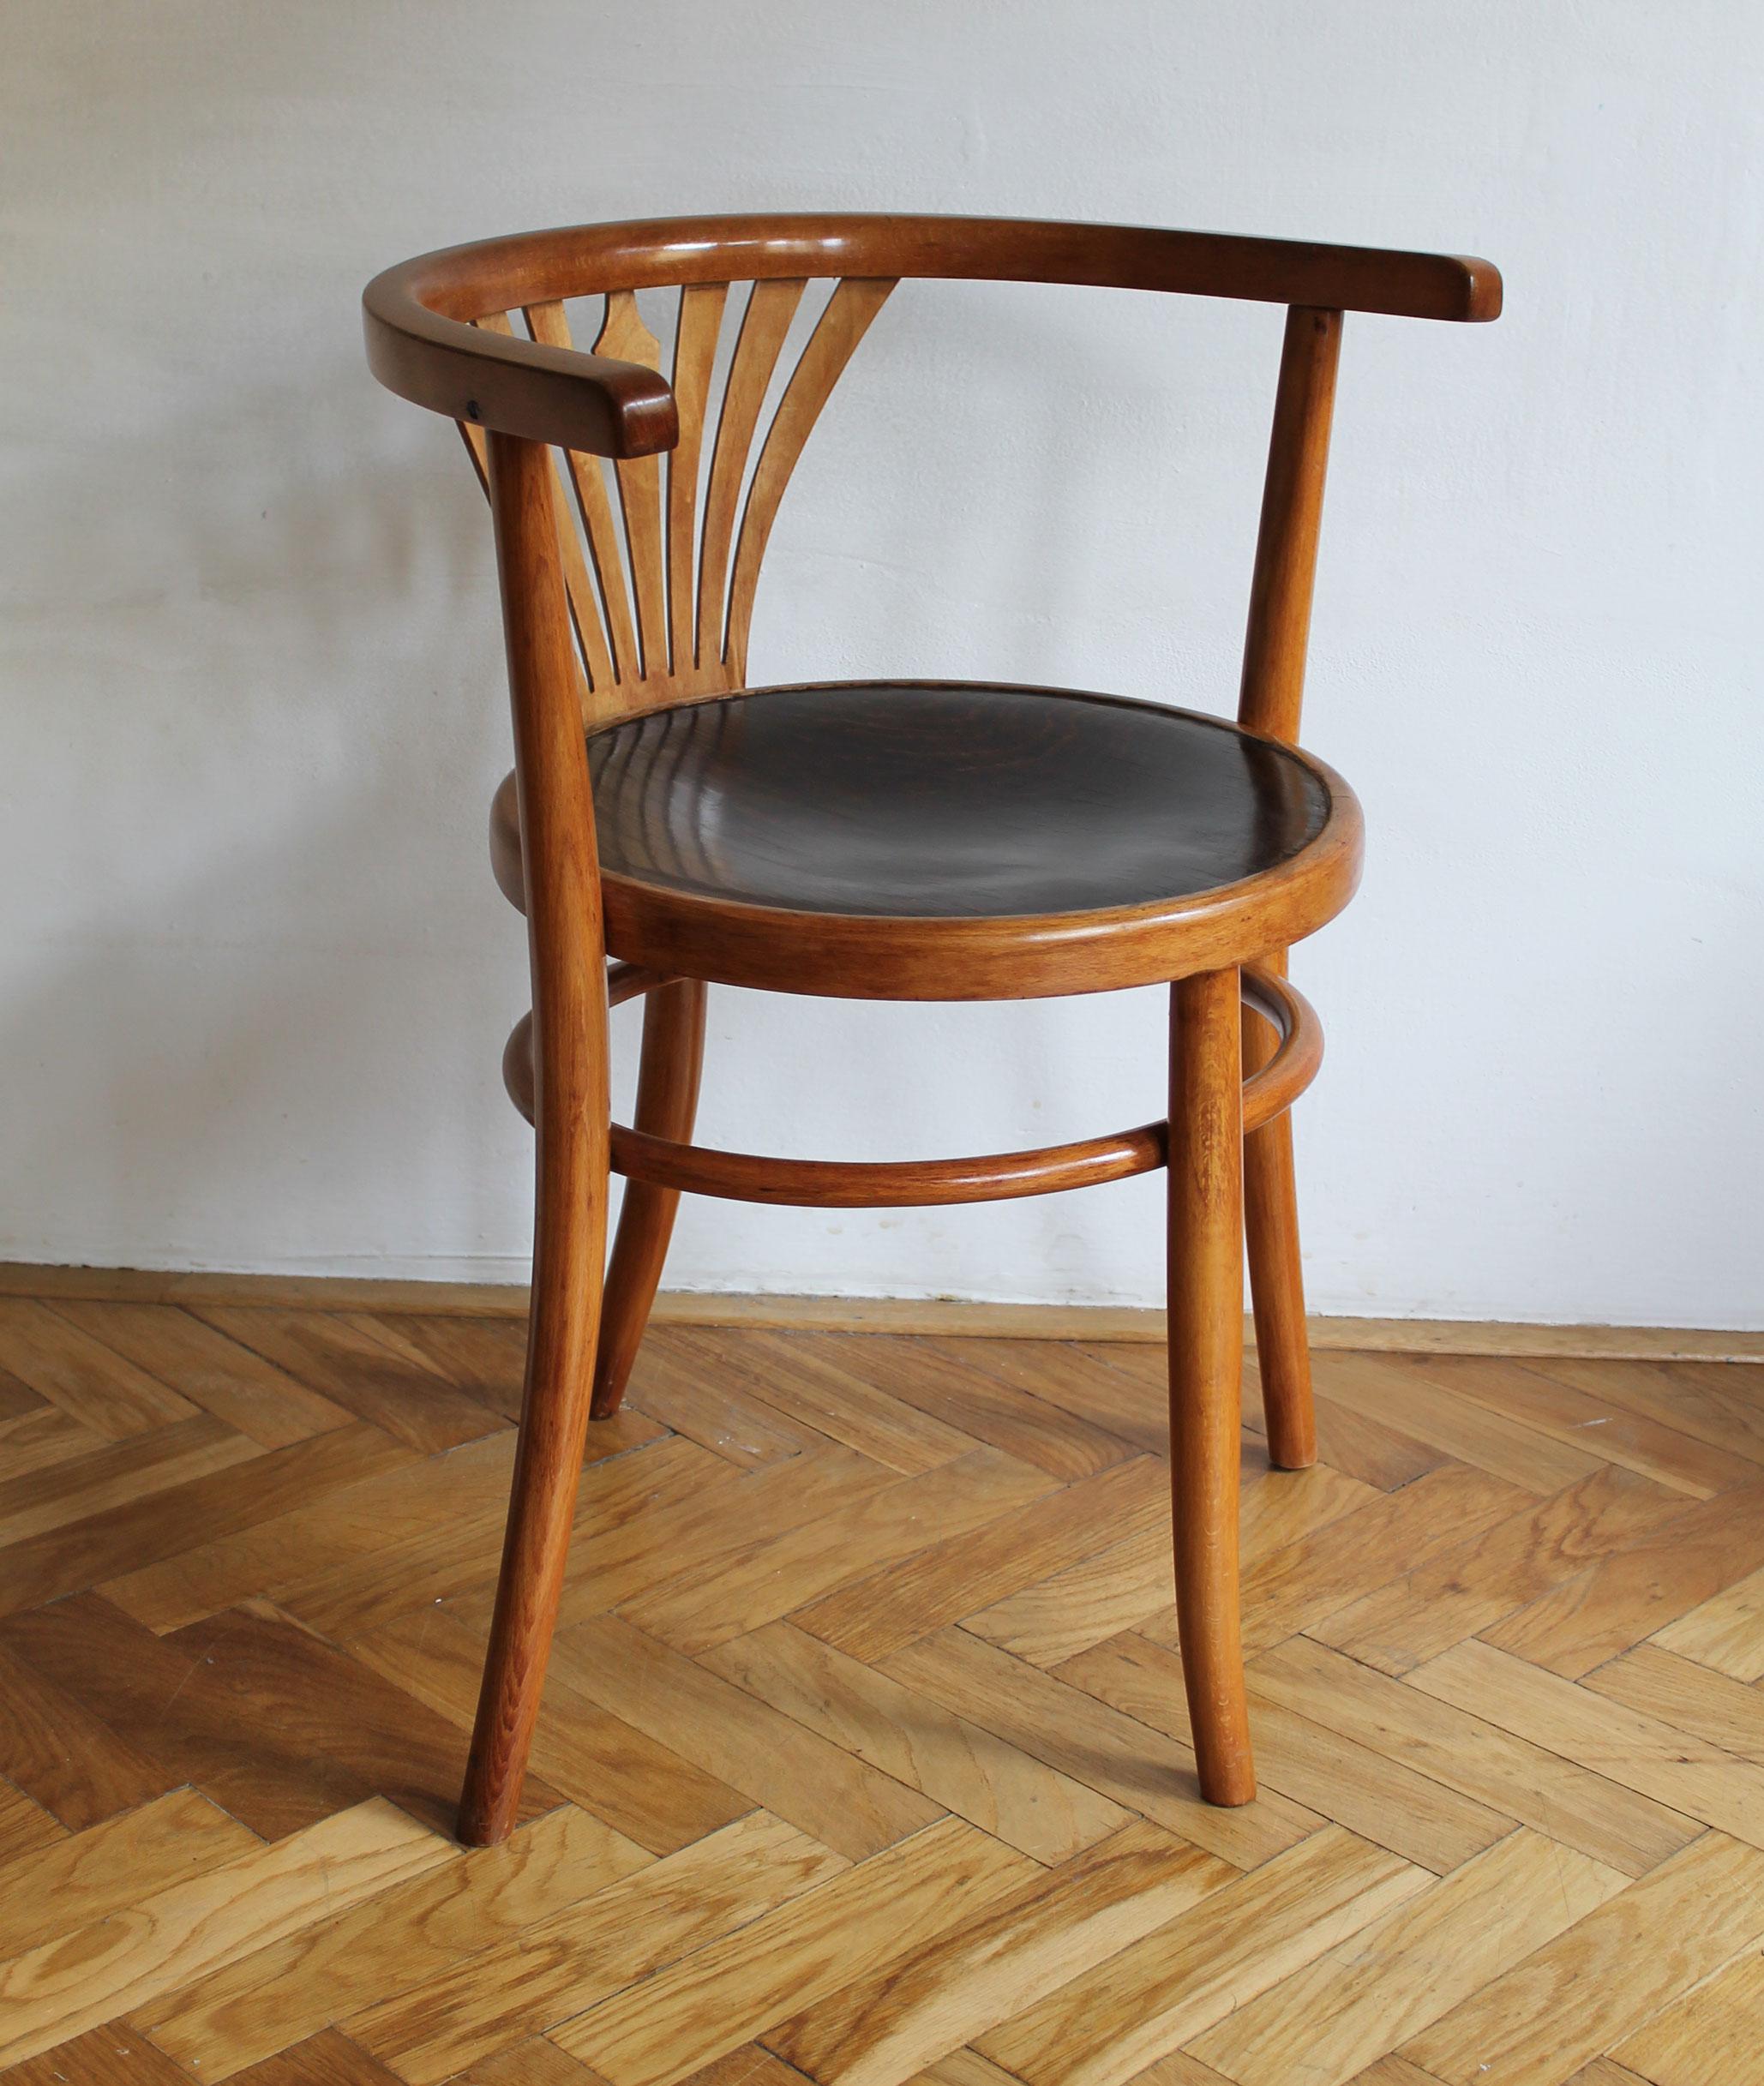 Cette chaise de salle à manger a été conçue à l'origine par la société Thonet en 1904, sous le numéro de modèle 28. Ce modèle particulier aurait été fabriqué par Thonet dans l'une de ses usines de l'ancienne Tchécoslovaquie vers 1926.

Le siège et